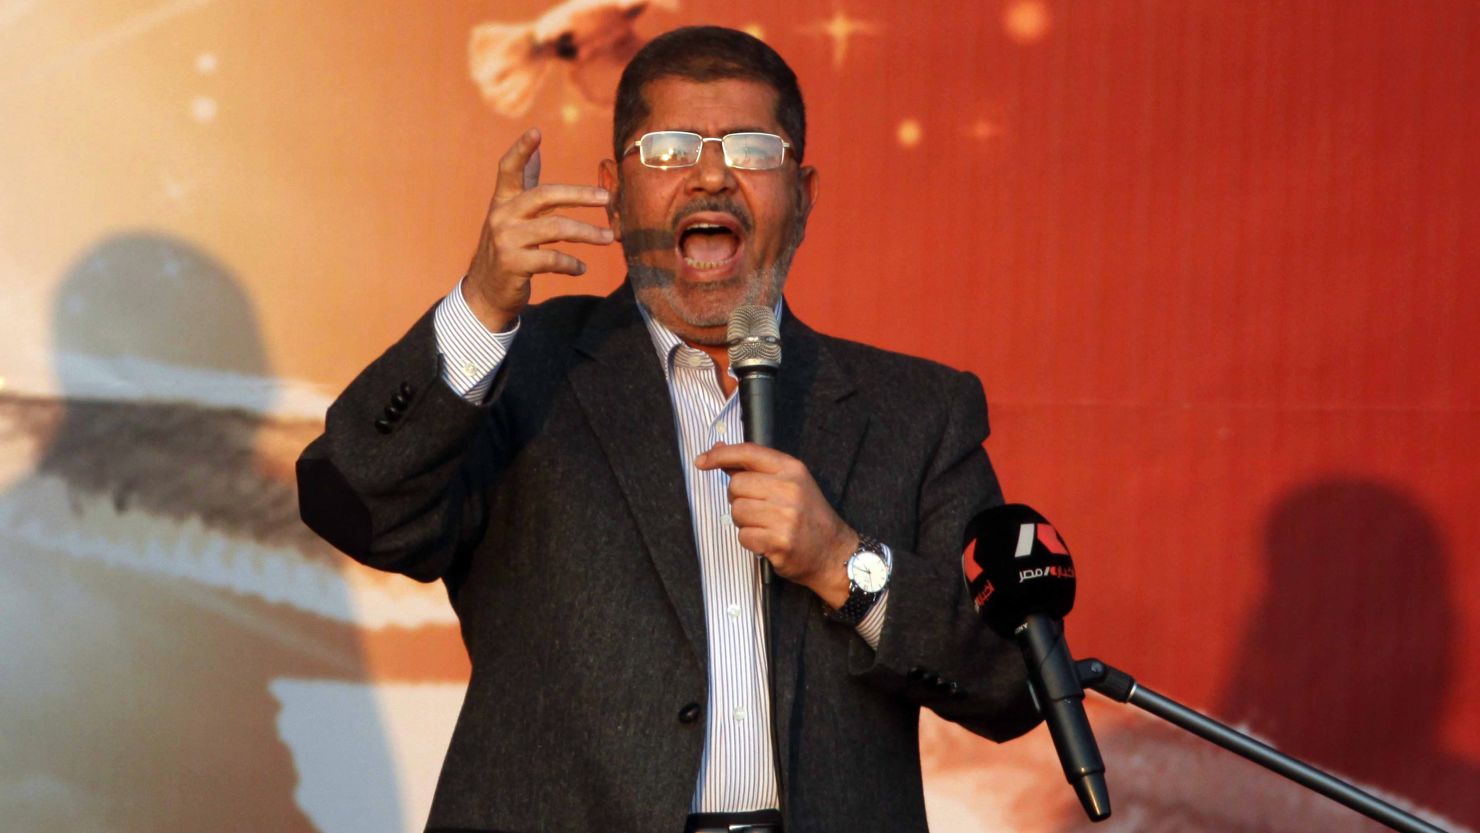 Egypt's Islamist President Mohamed Morsy waves to his supporters in November.